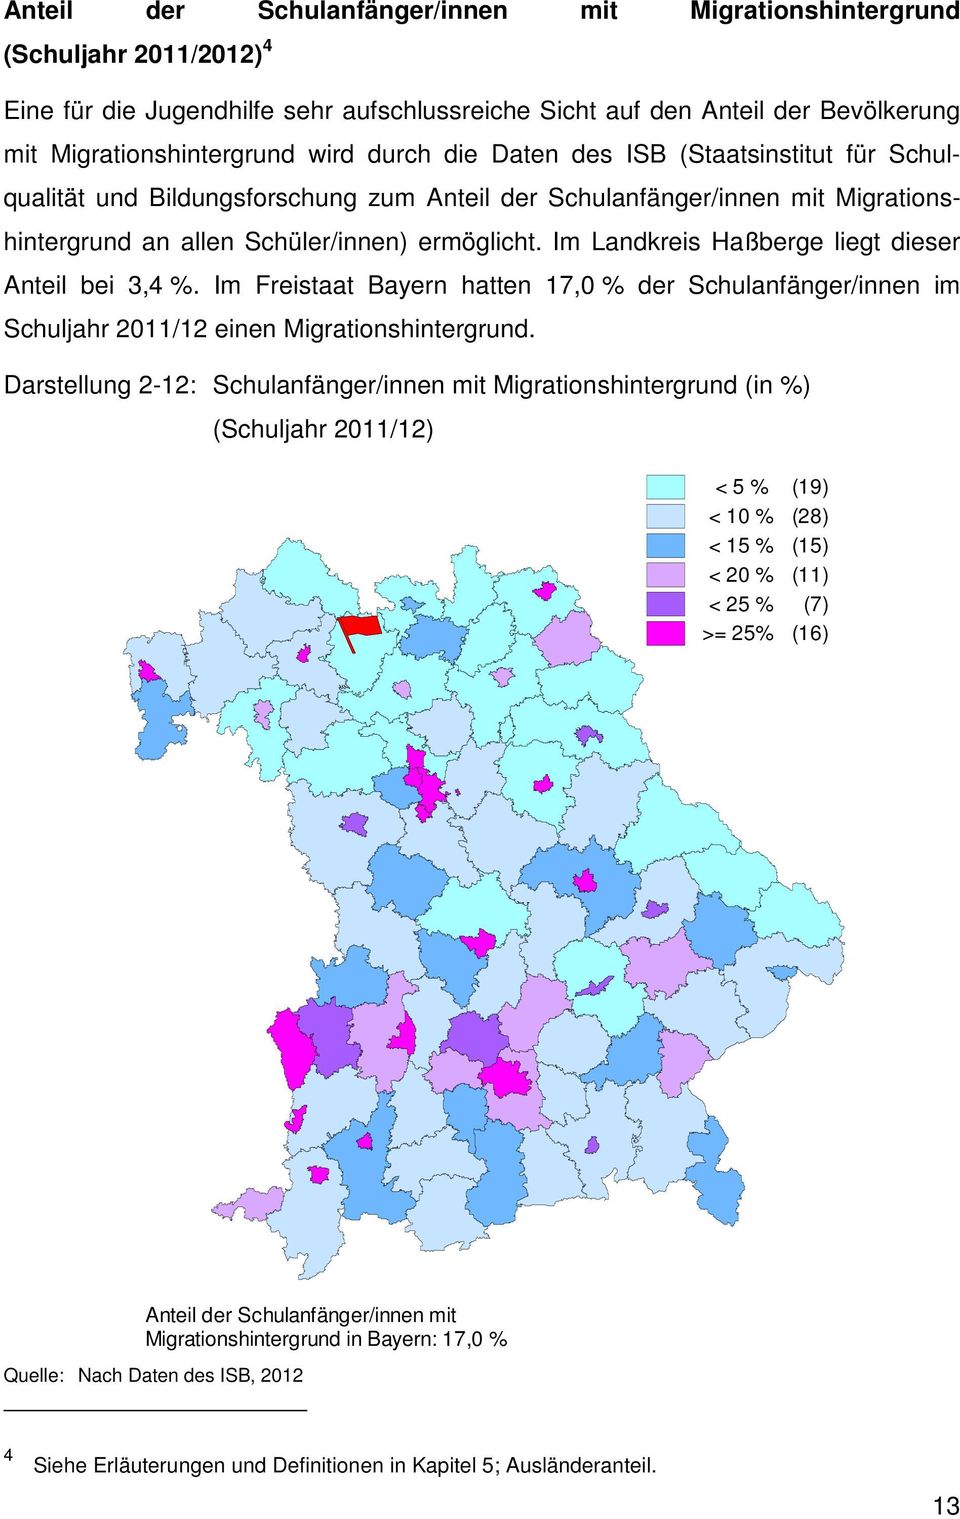 Im Landkreis Haßberge liegt dieser Anteil bei 3,4 %. Im Freistaat Bayern hatten 17,0 % der Schulanfänger/innen im Schuljahr 2011/12 einen Migrationshintergrund.